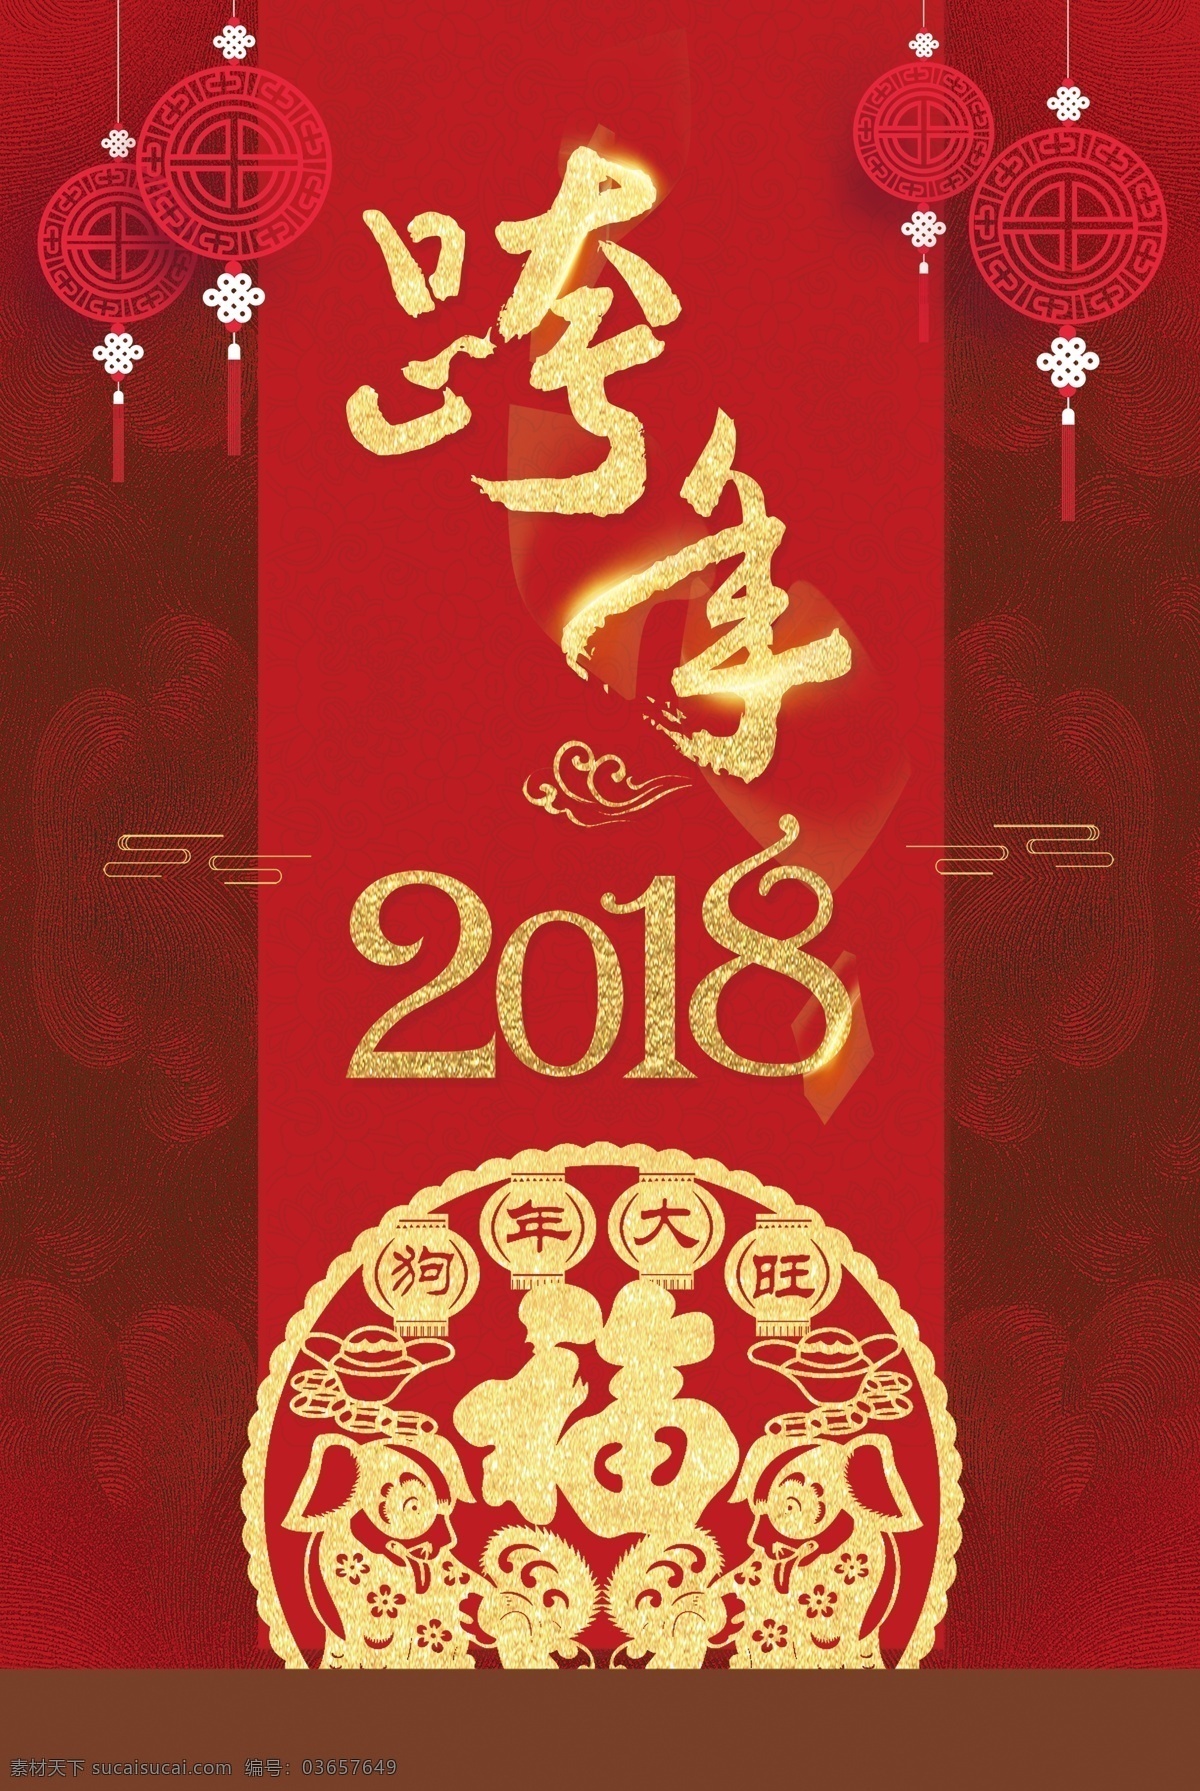 2018 跨 年 晚会 红色 中 国风 请柬 剪纸 背景 灯笼 福 公司年会 红色背景 跨年晚会 新年海报 中国风